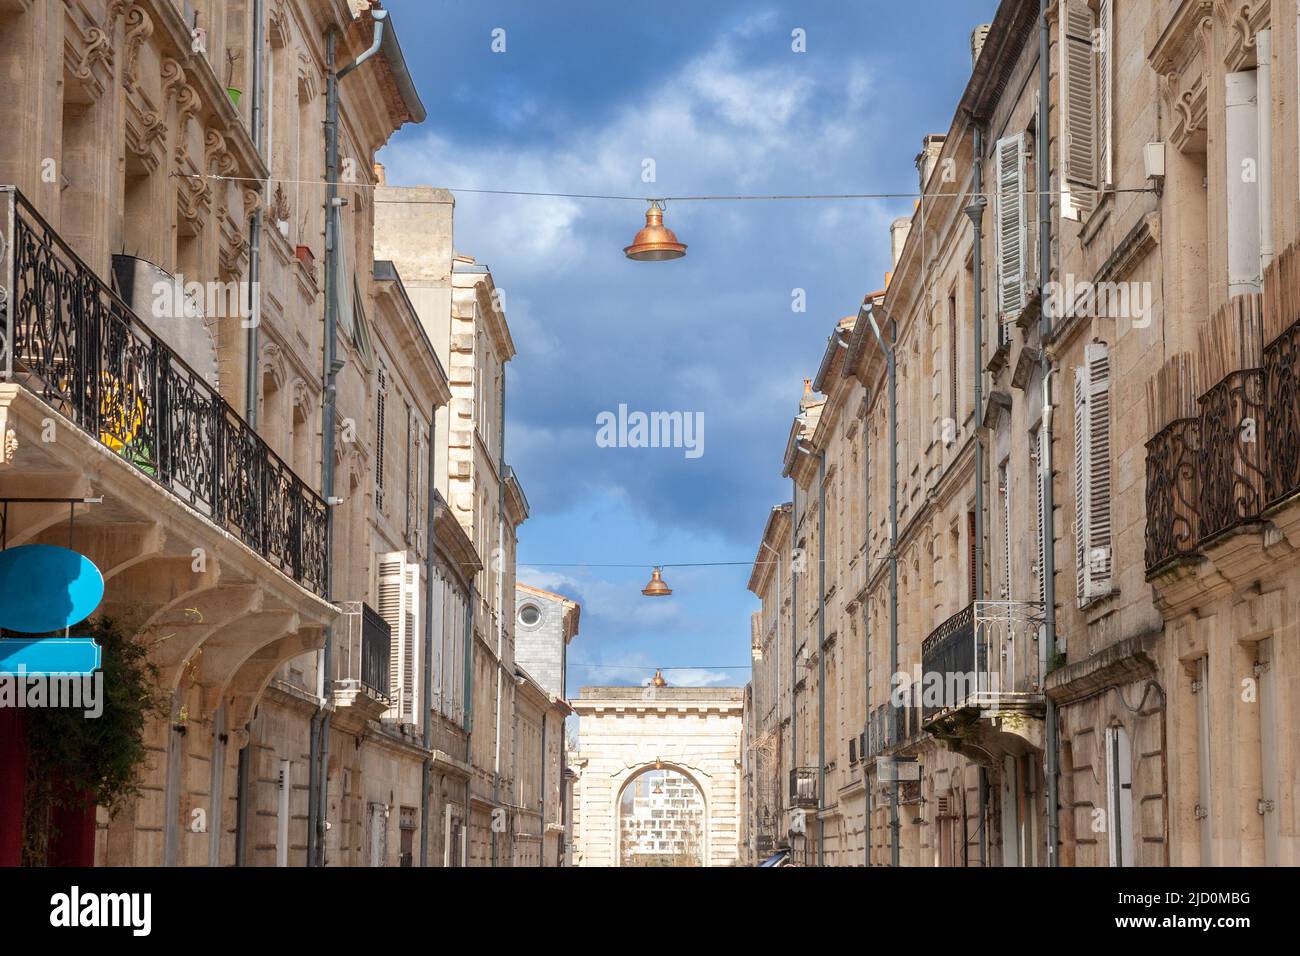 Bild eines typischen Gebäudes im Stadtzentrum von Bordeaux, Frankreich, mit der porte de bourgogne im Hintergrund. Stockfoto